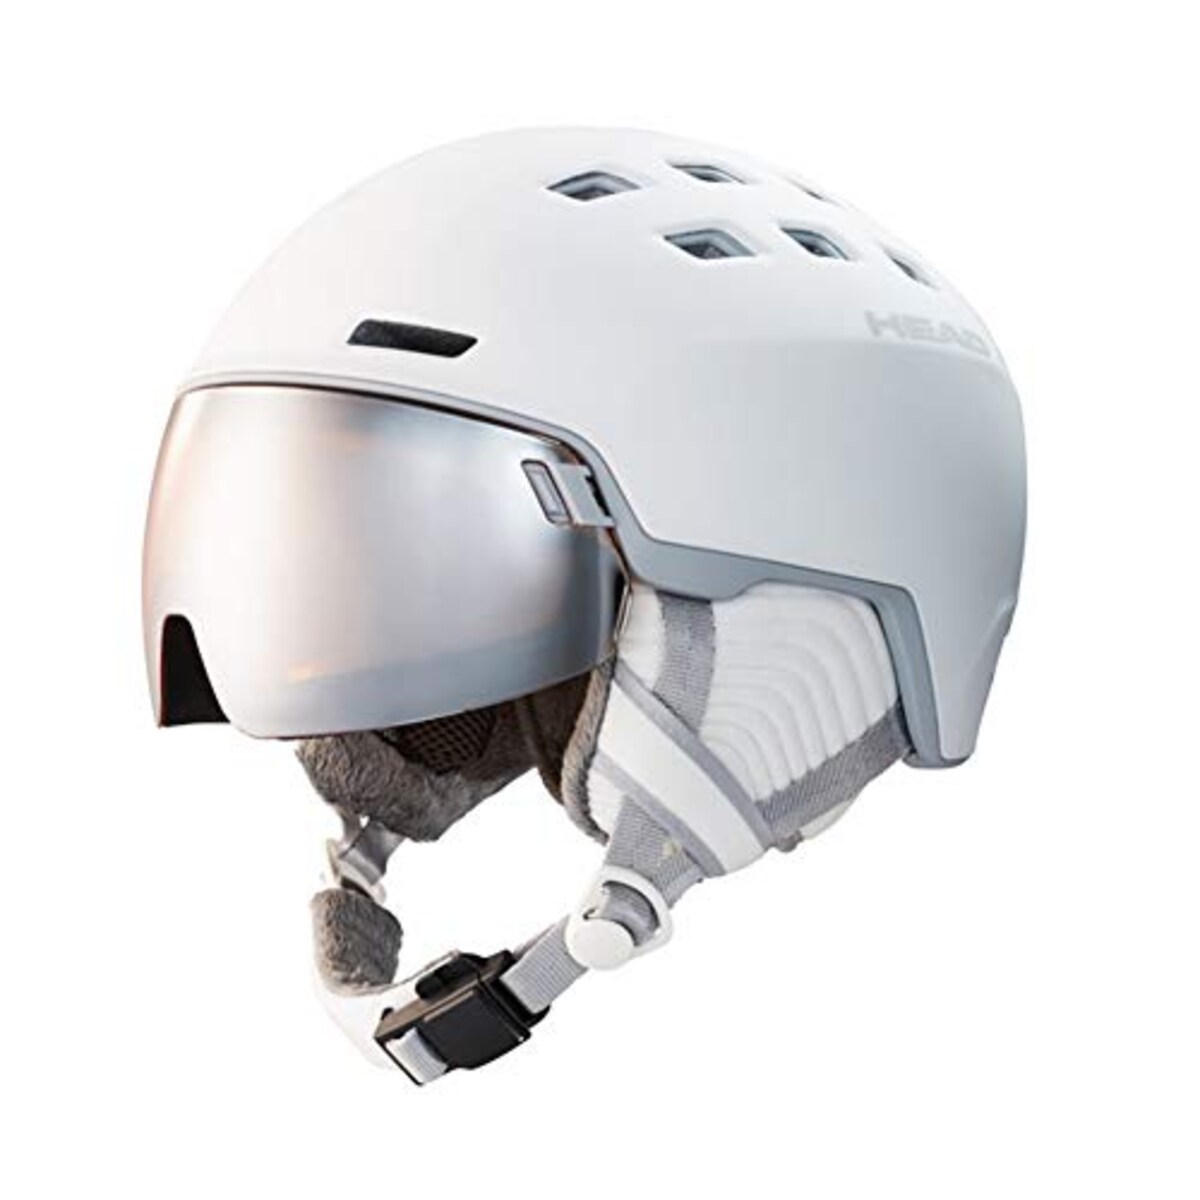 スキーヘルメット レディース RACHEL ホワイト画像